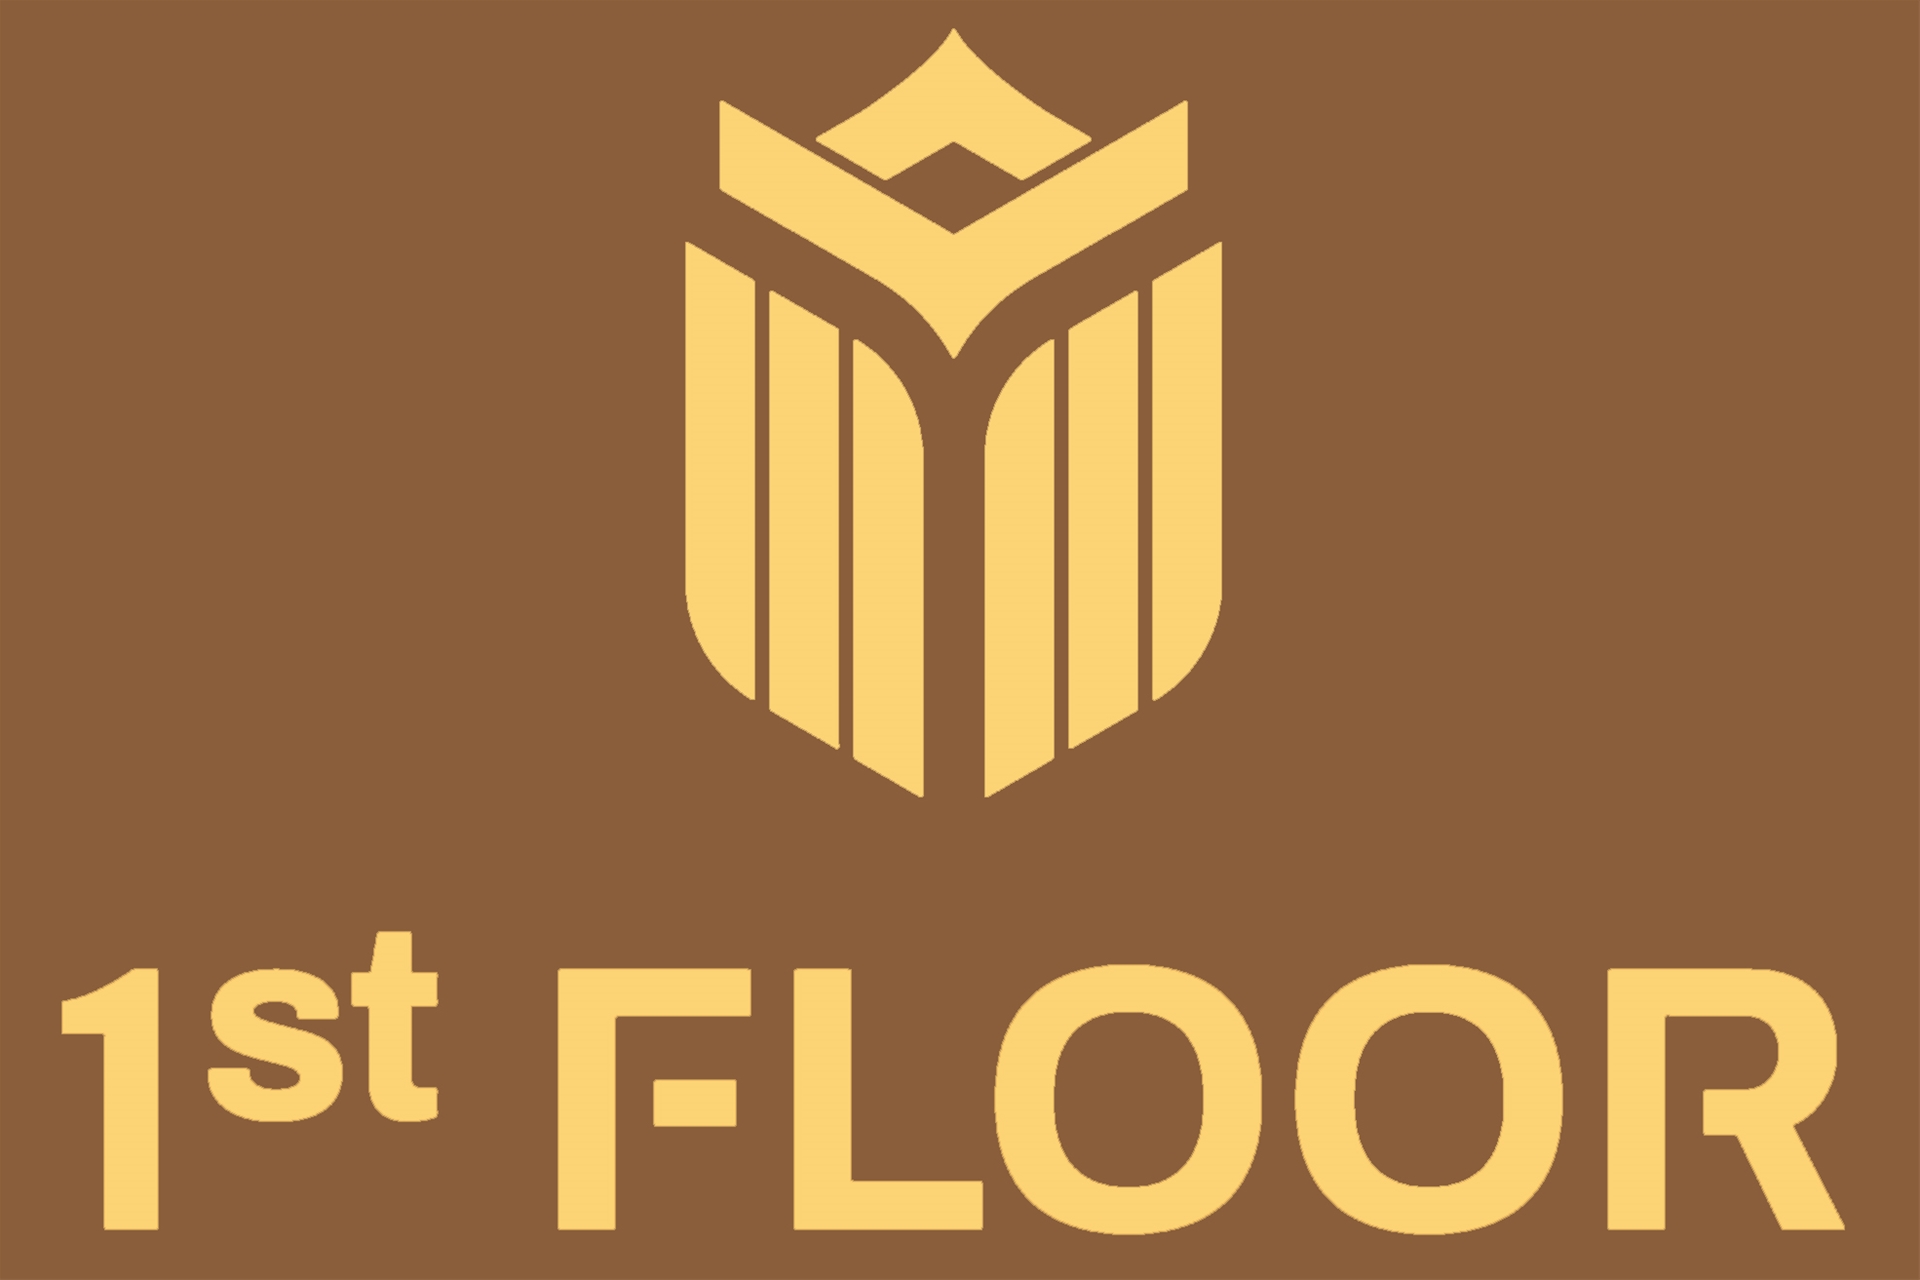 1st FloorHệ thống phân phối sàn gỗ cao cấp